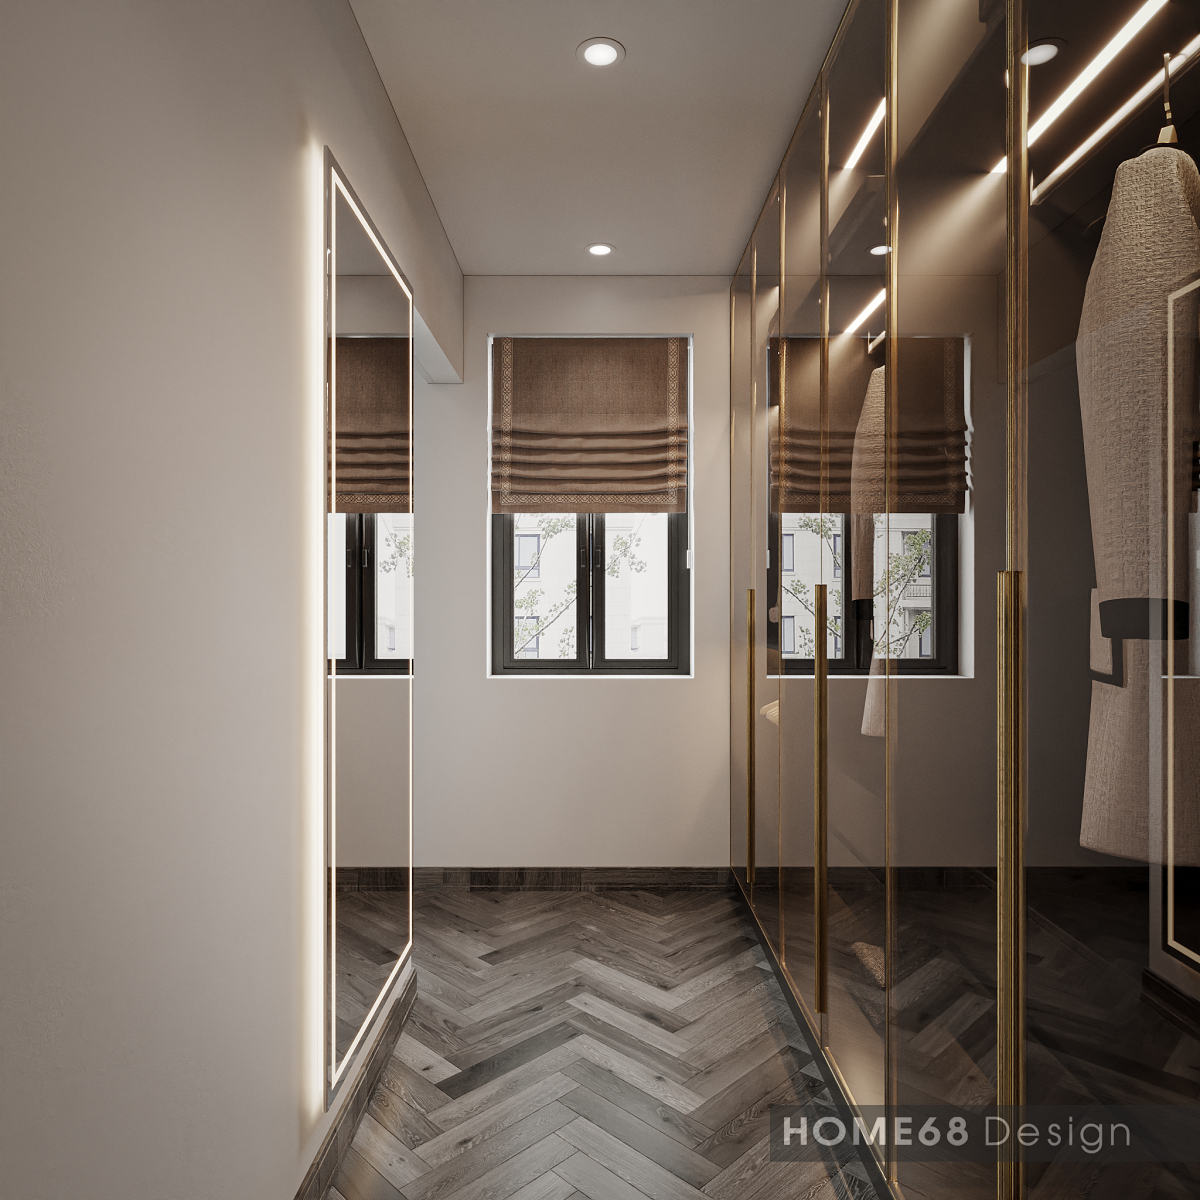 Mẫu thiết kế nội thất phòng ngủ hiện đại của HOME68 đem lại sự ưng ý hoàn toàn từ khách hàng